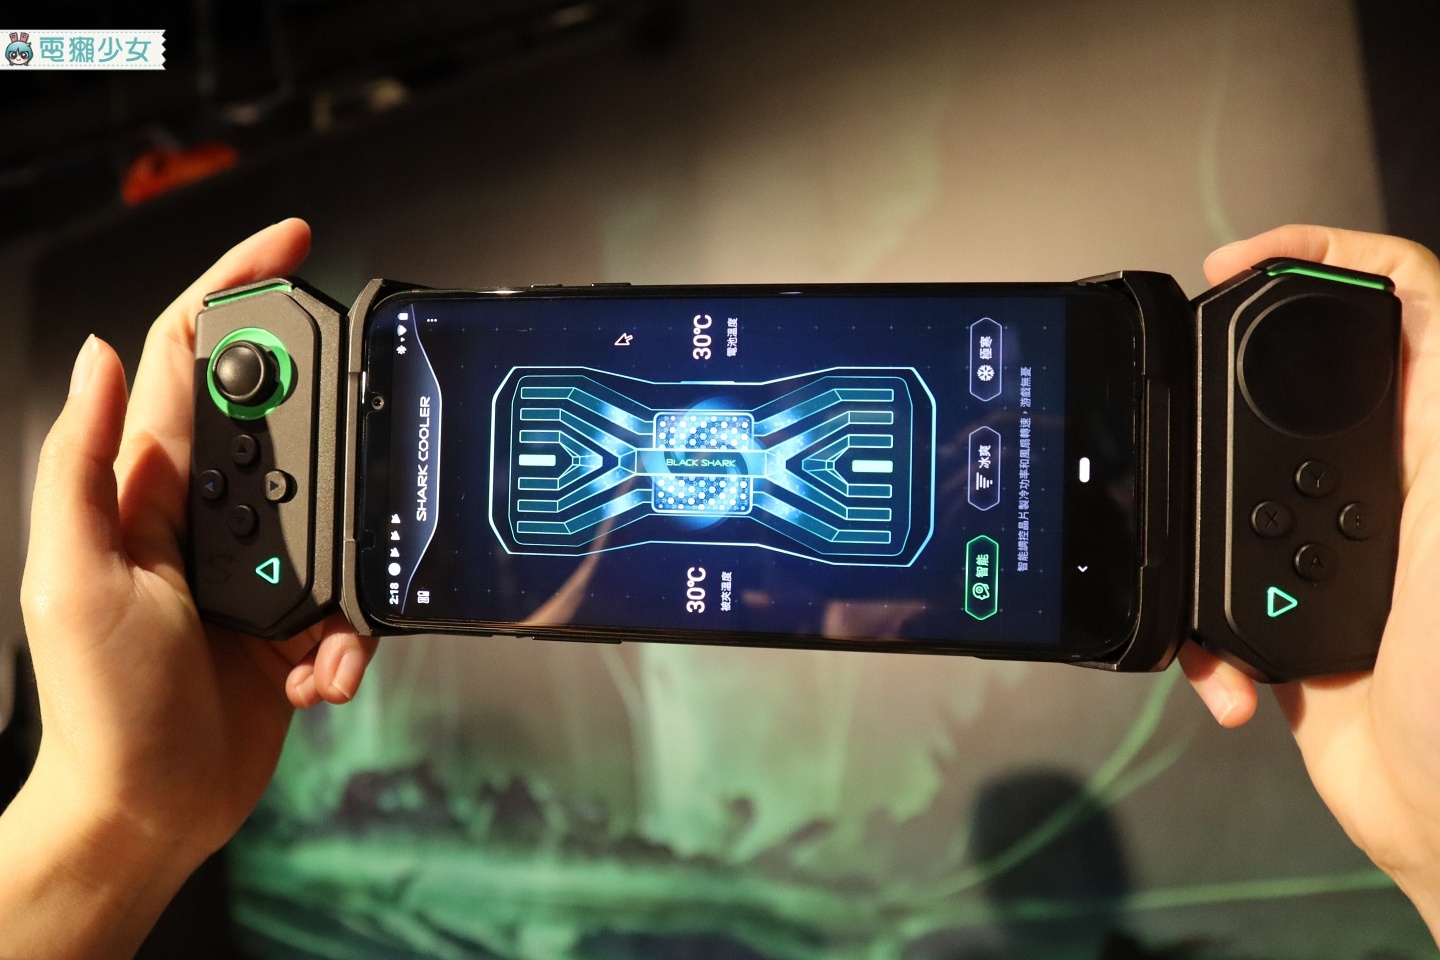 『 黑鯊遊戲手機2 』台灣開放預購！18,990元起 有12GB+256GB的選擇